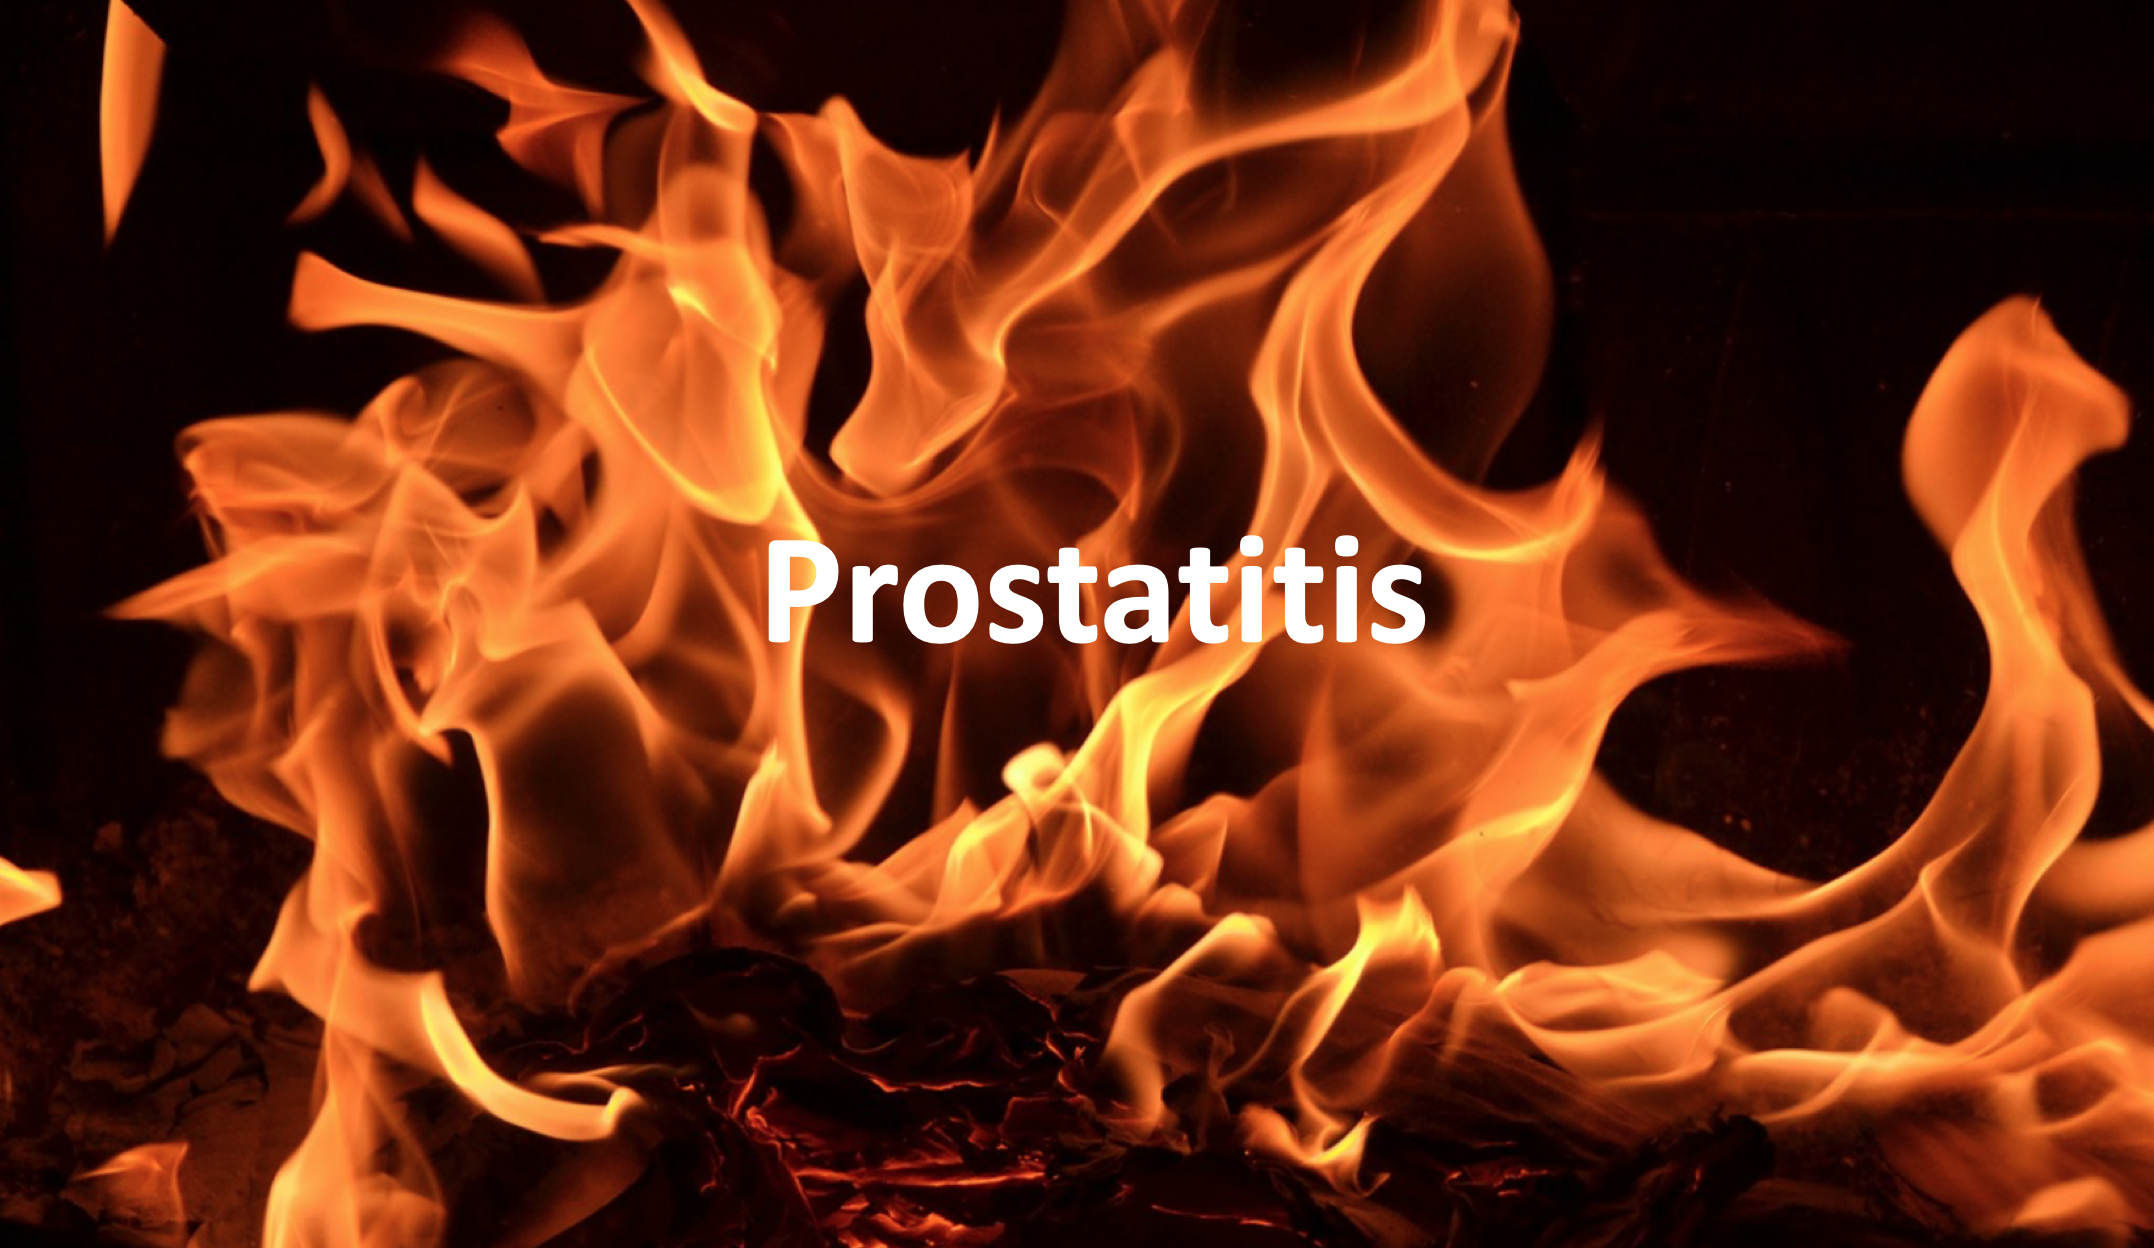 Ennek eredményeként a prostatitis